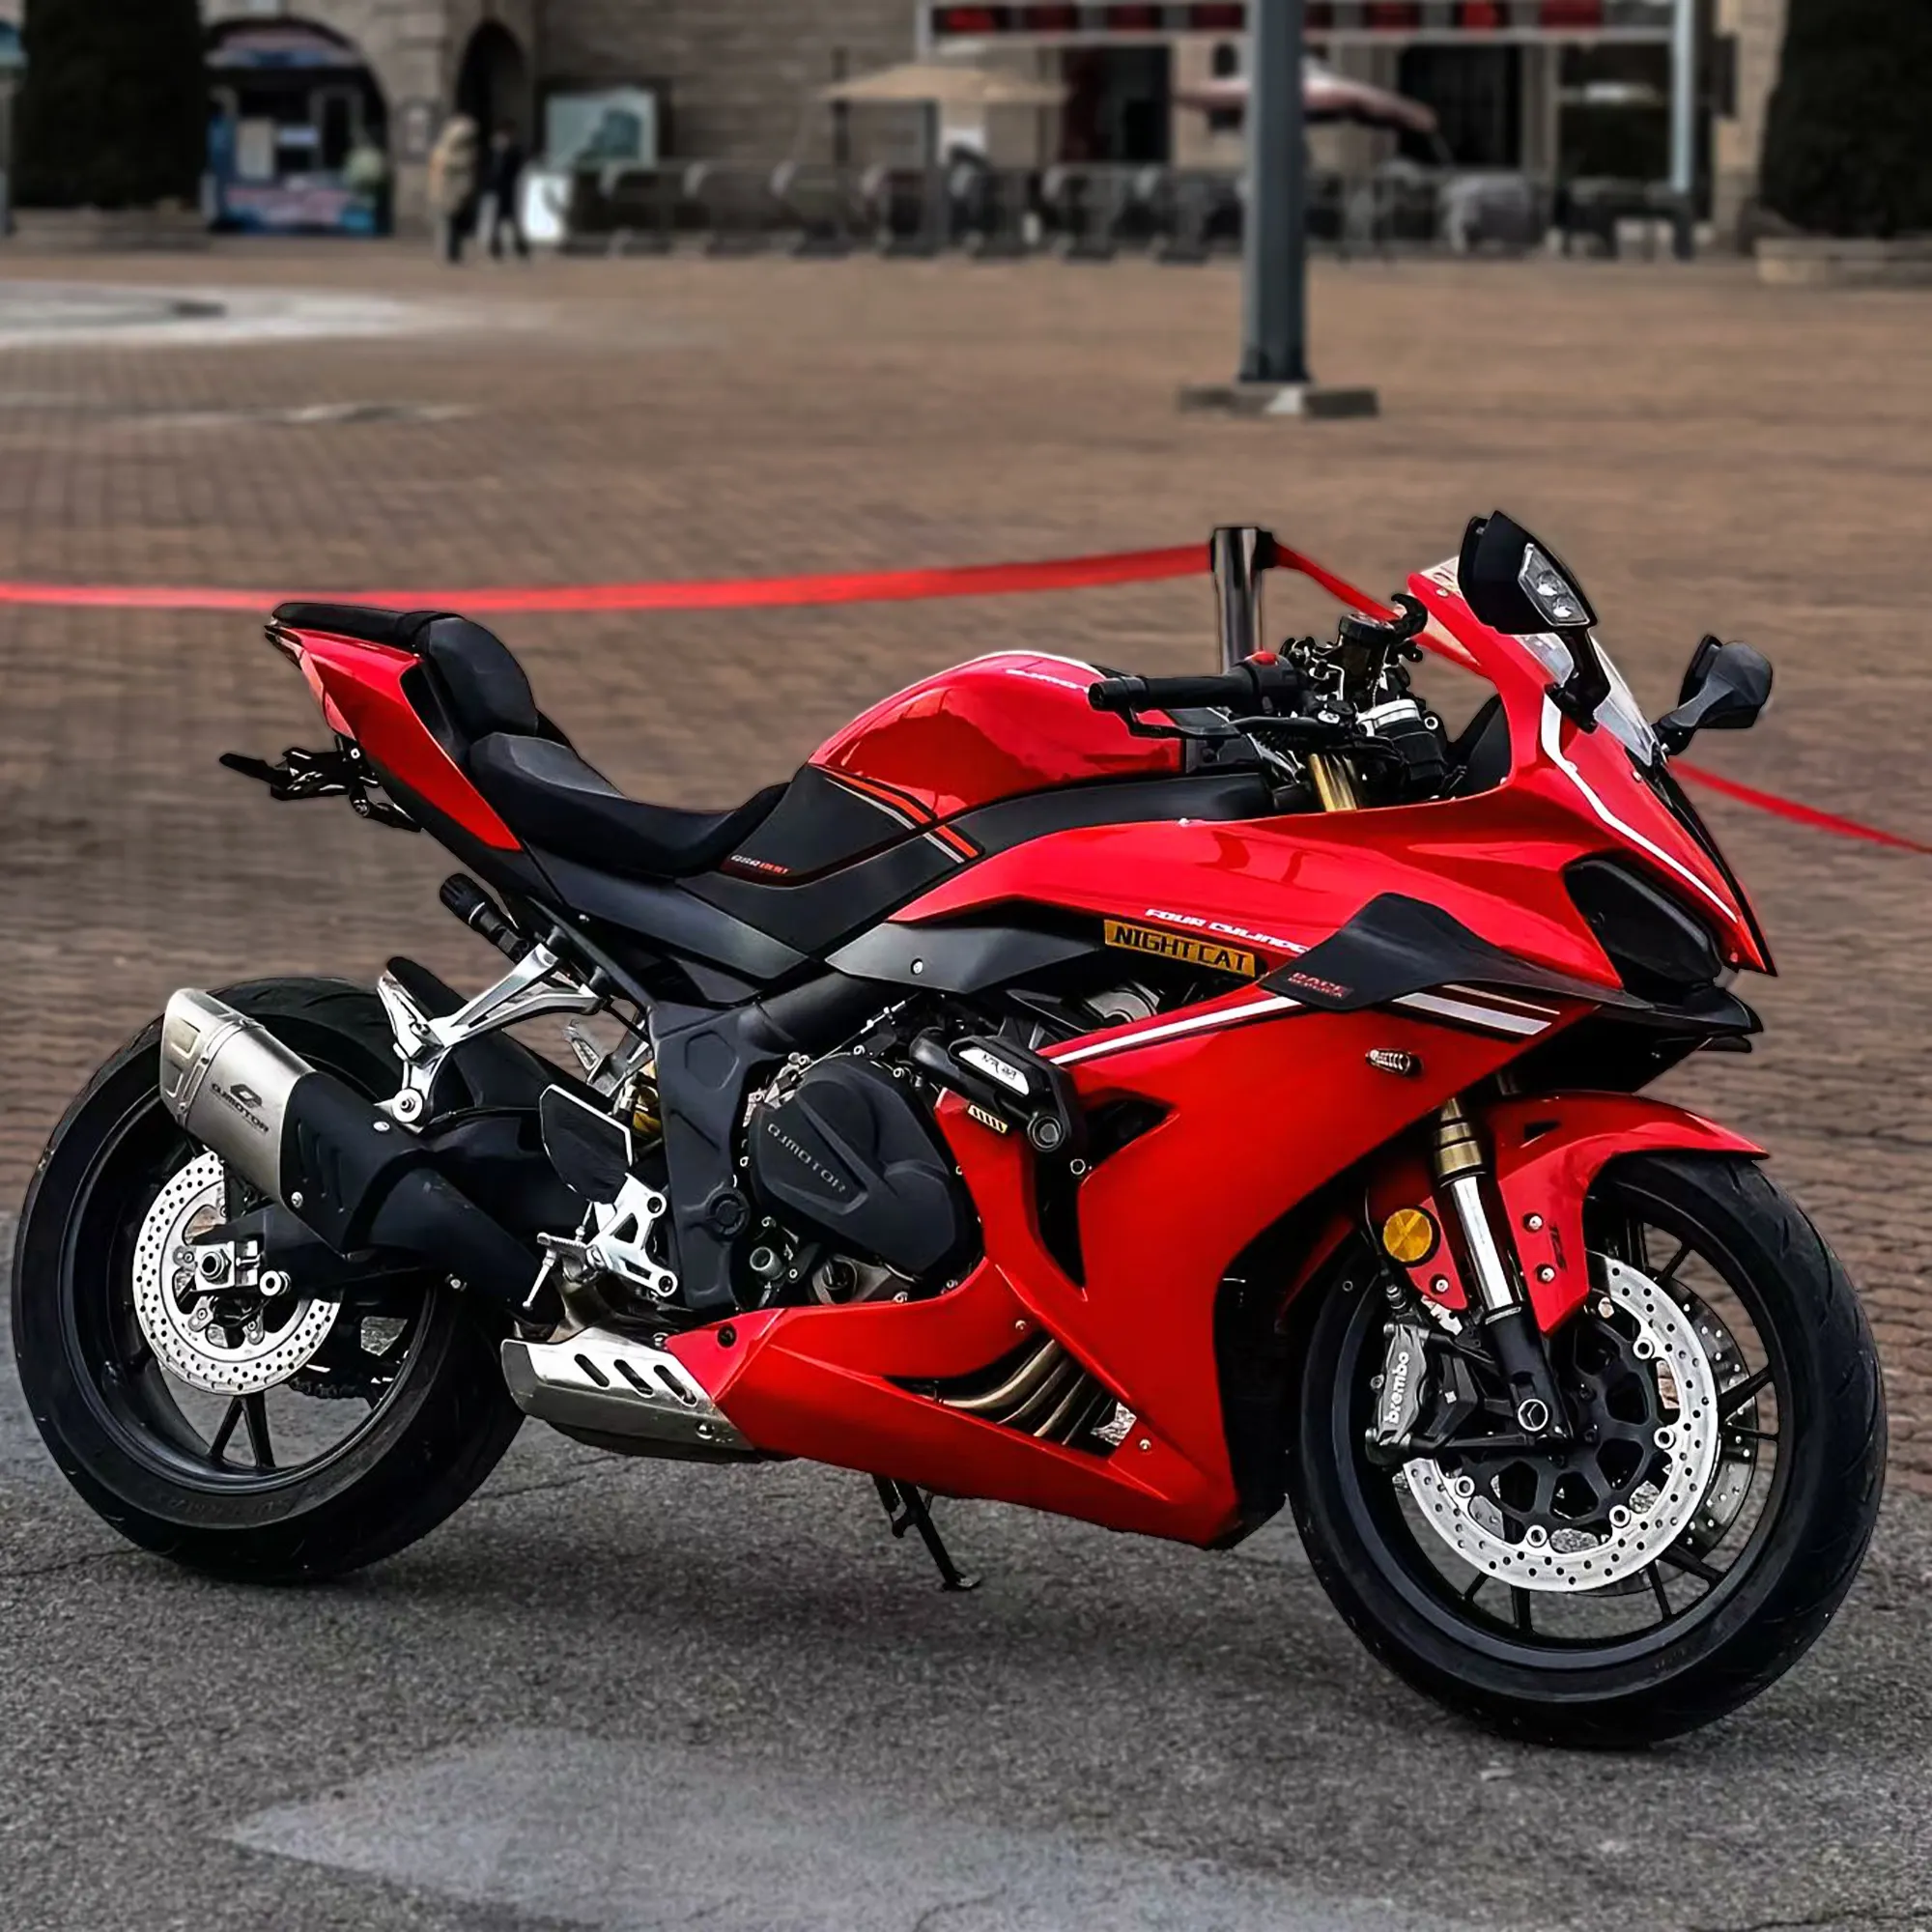 저렴한 가격 200cc 250cc 400cc 가솔린 스포츠 레이싱 오토바이로 좋은 품질의 오토바이 경주